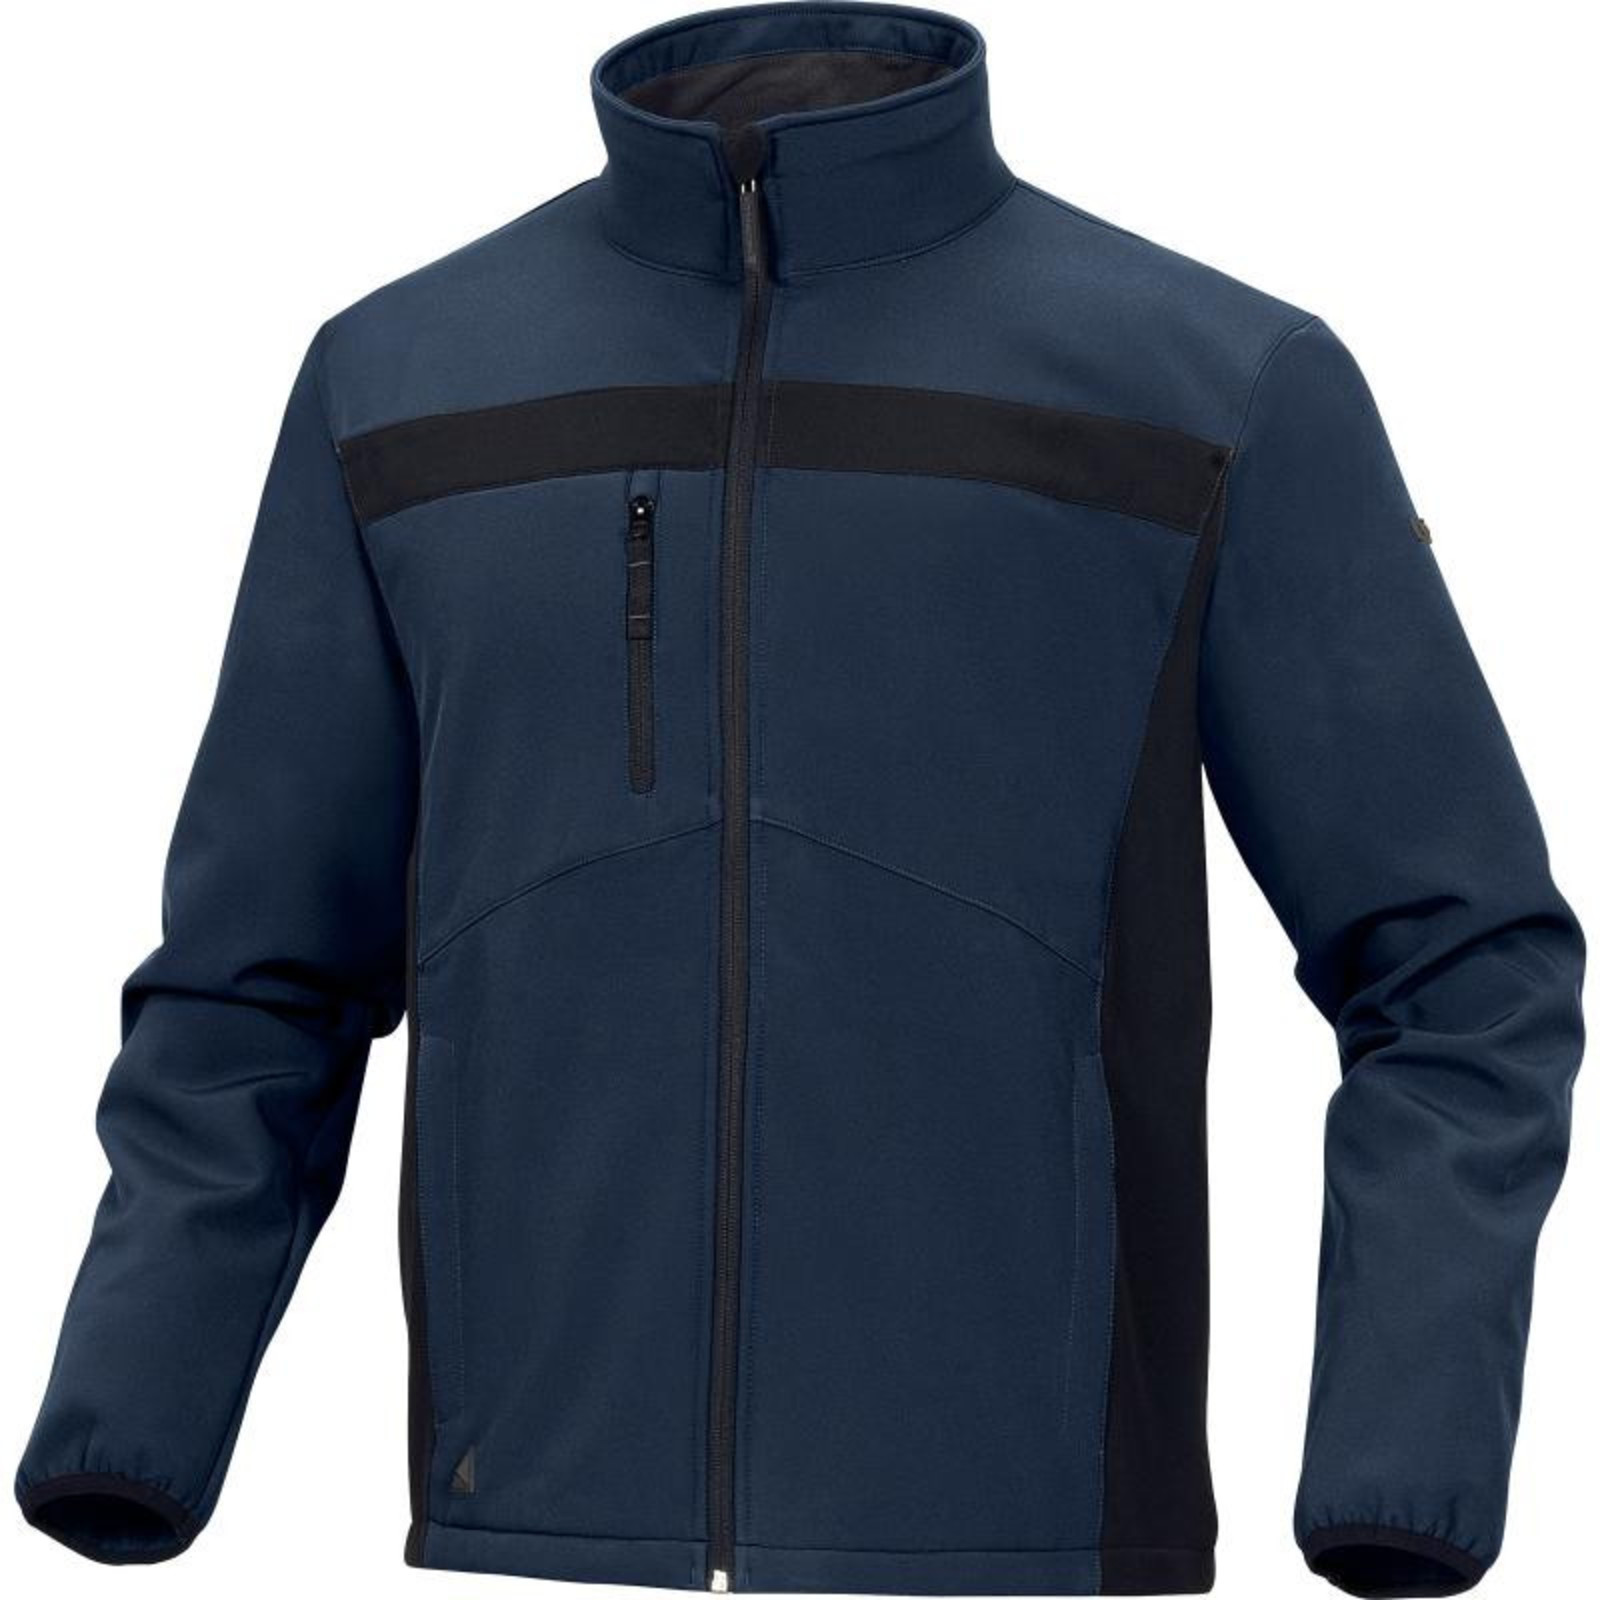 Softshellová bunda Delta Plus Lulea2 - veľkosť: M, farba: námornícka modrá/čierna